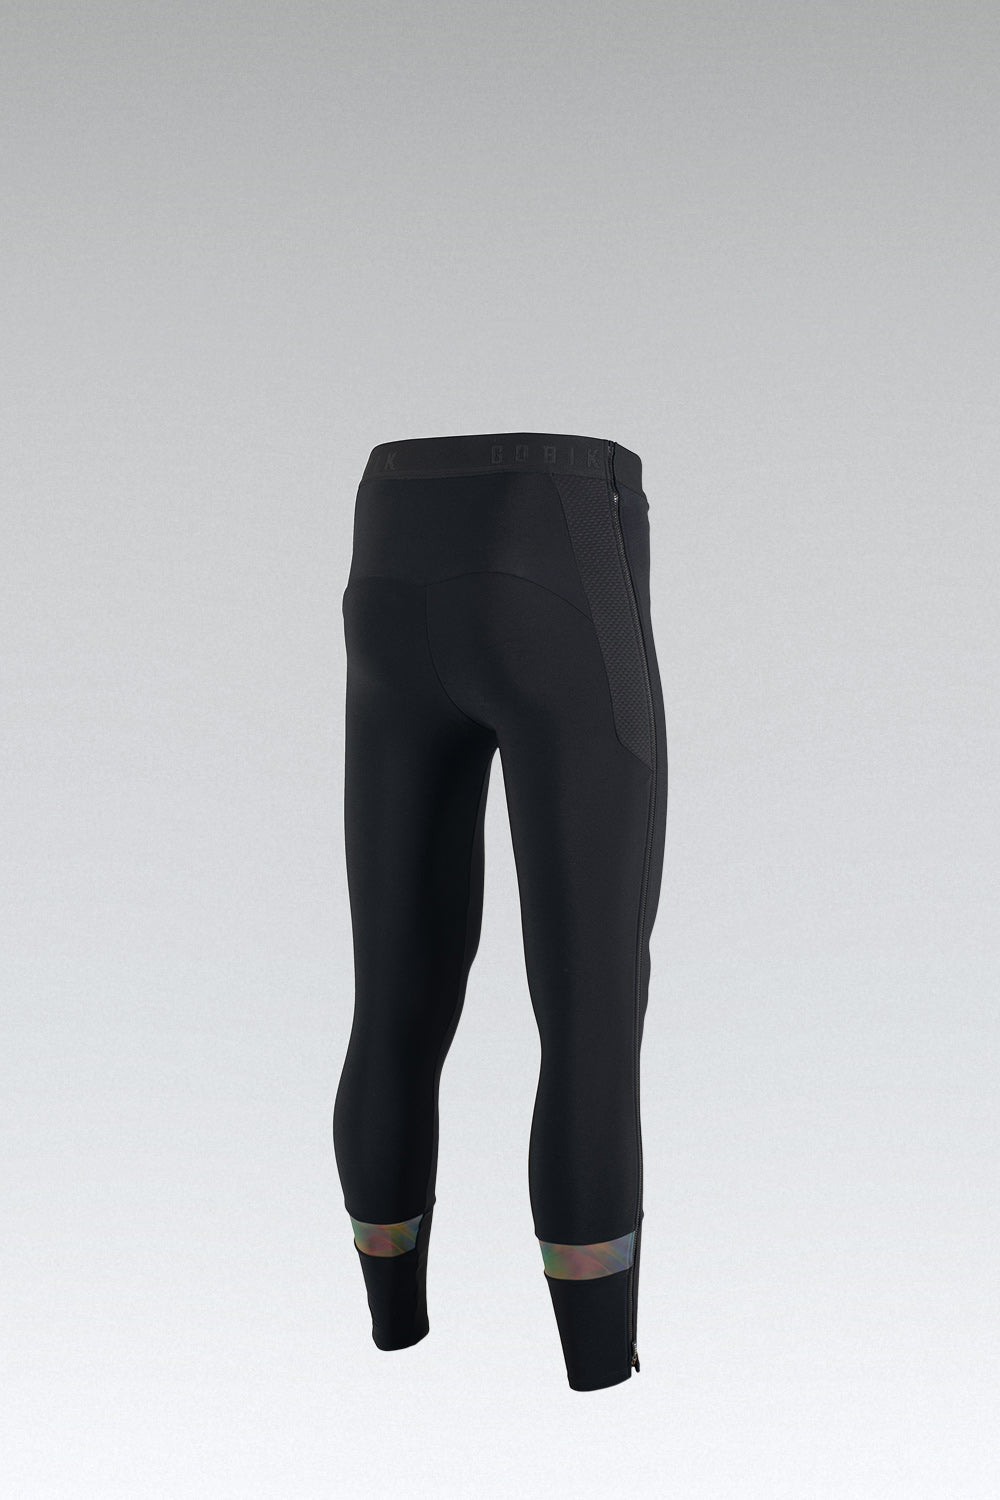 Buy Nike Women's Pro Hyperwarm Leggings Black in KSA -SSS